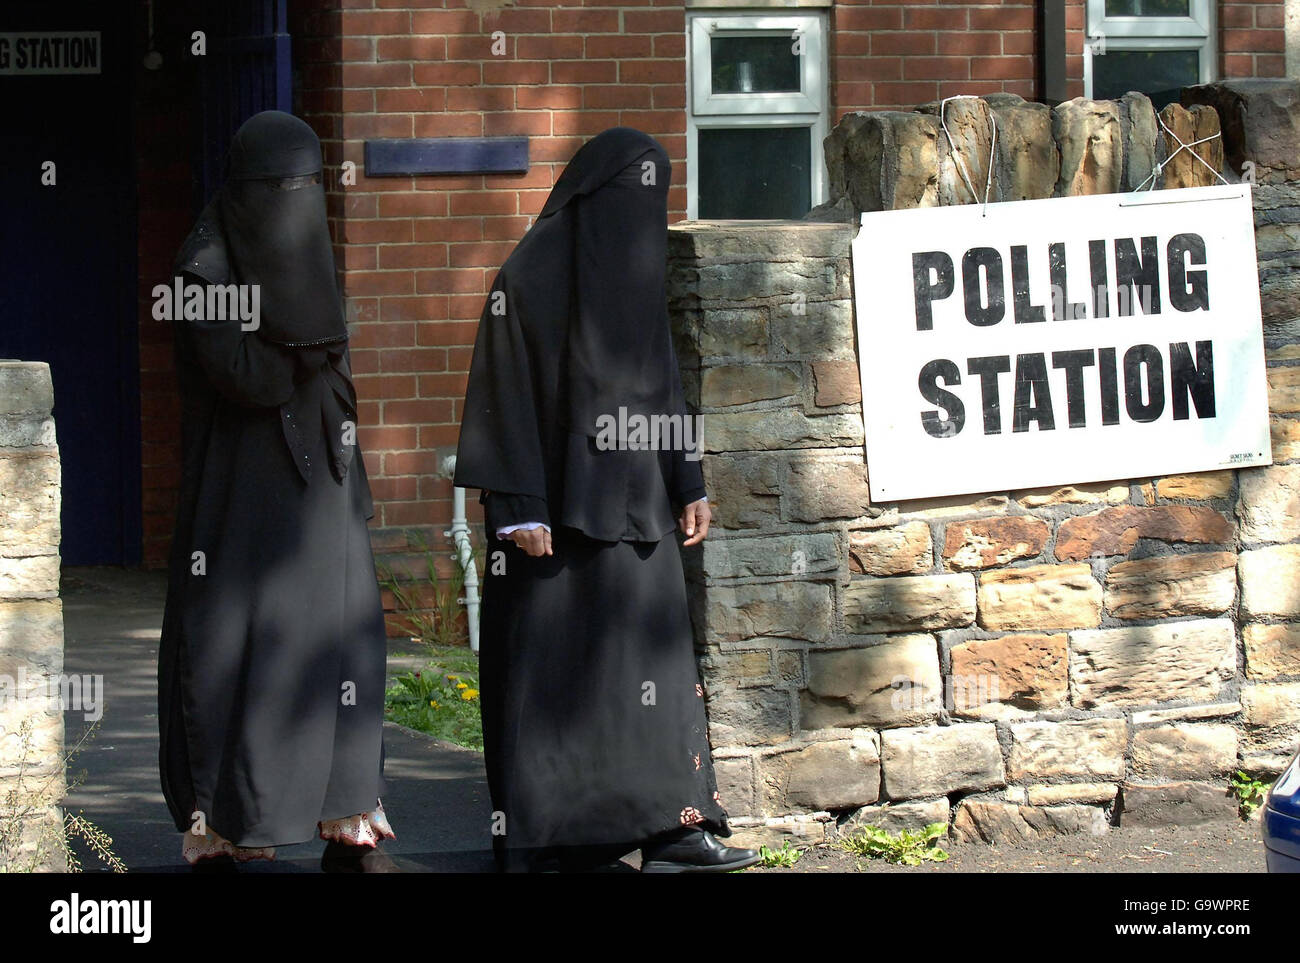 Le bureau de vote de Saville Town, Dewsbury, près du domicile de Mohammed Sidique Khan, le chef des kamikazes de Londres, avec les électeurs qui vont voter aux élections locales aujourd'hui. Banque D'Images